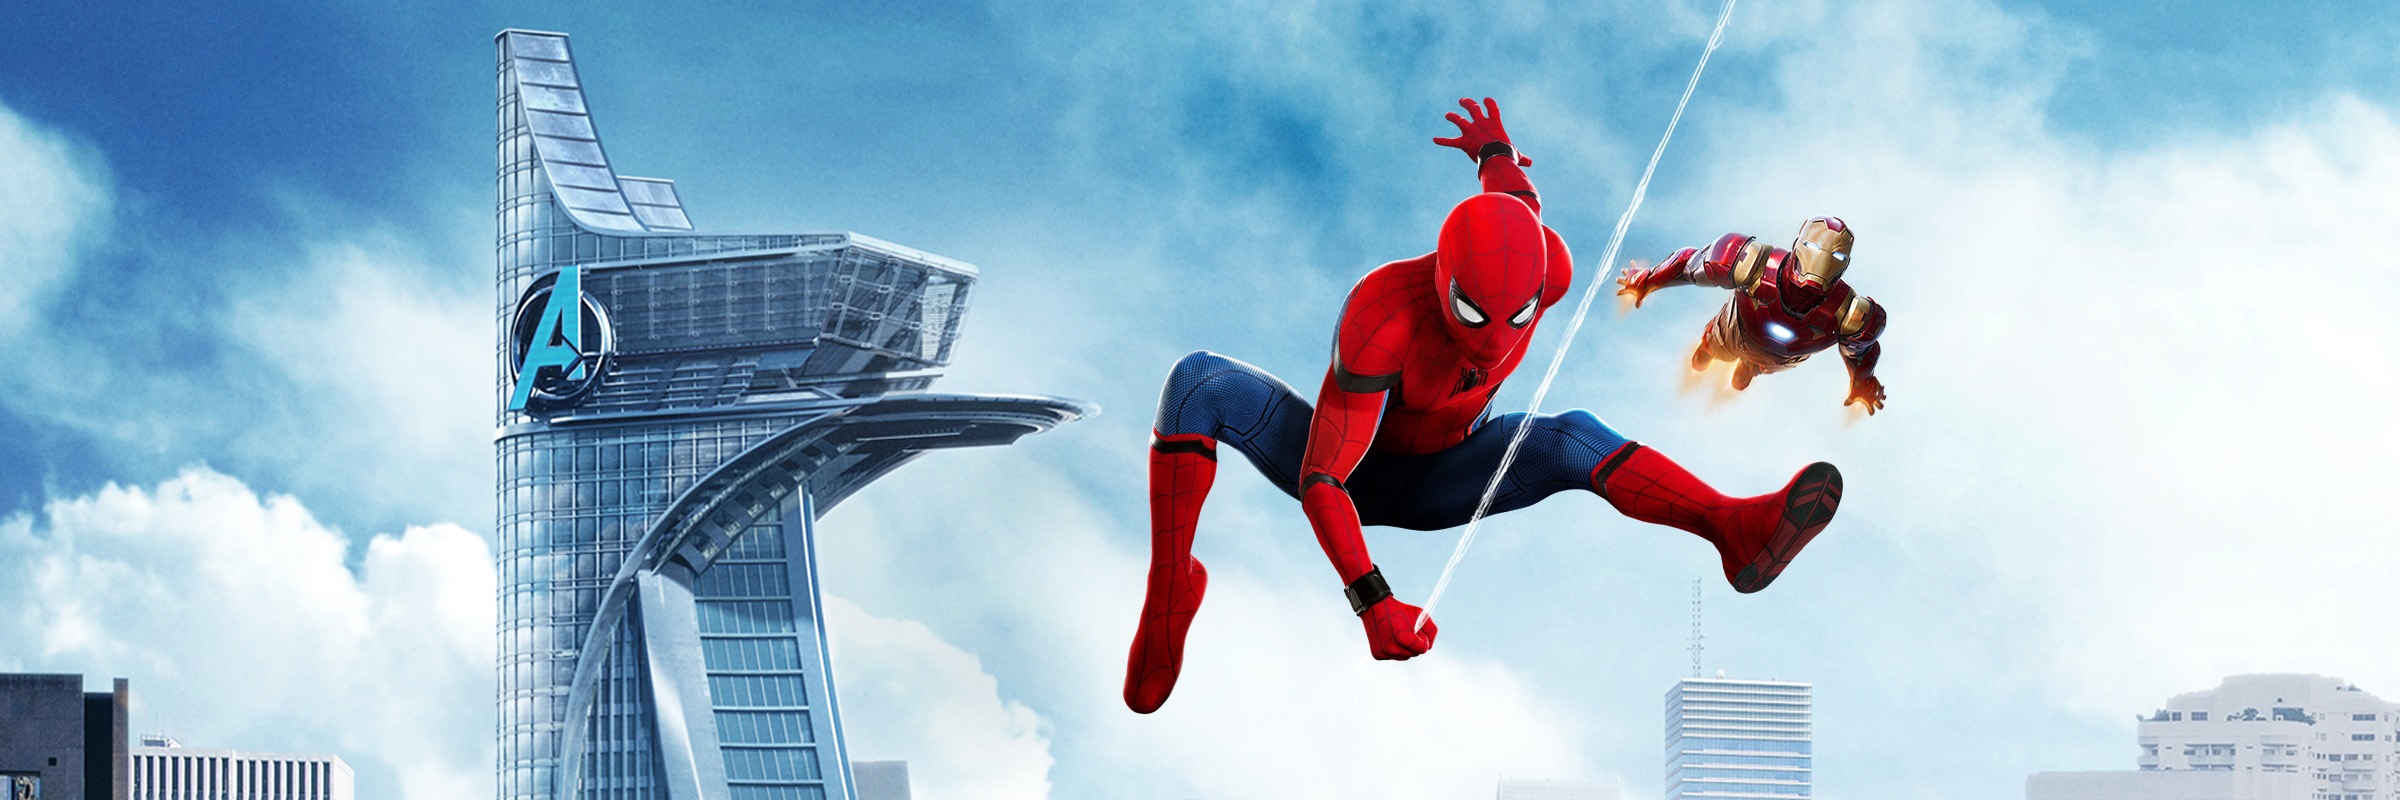 Image du film Spider-Man : Homecoming 432404e8-eb44-4fcf-beb8-95a2ef538e46